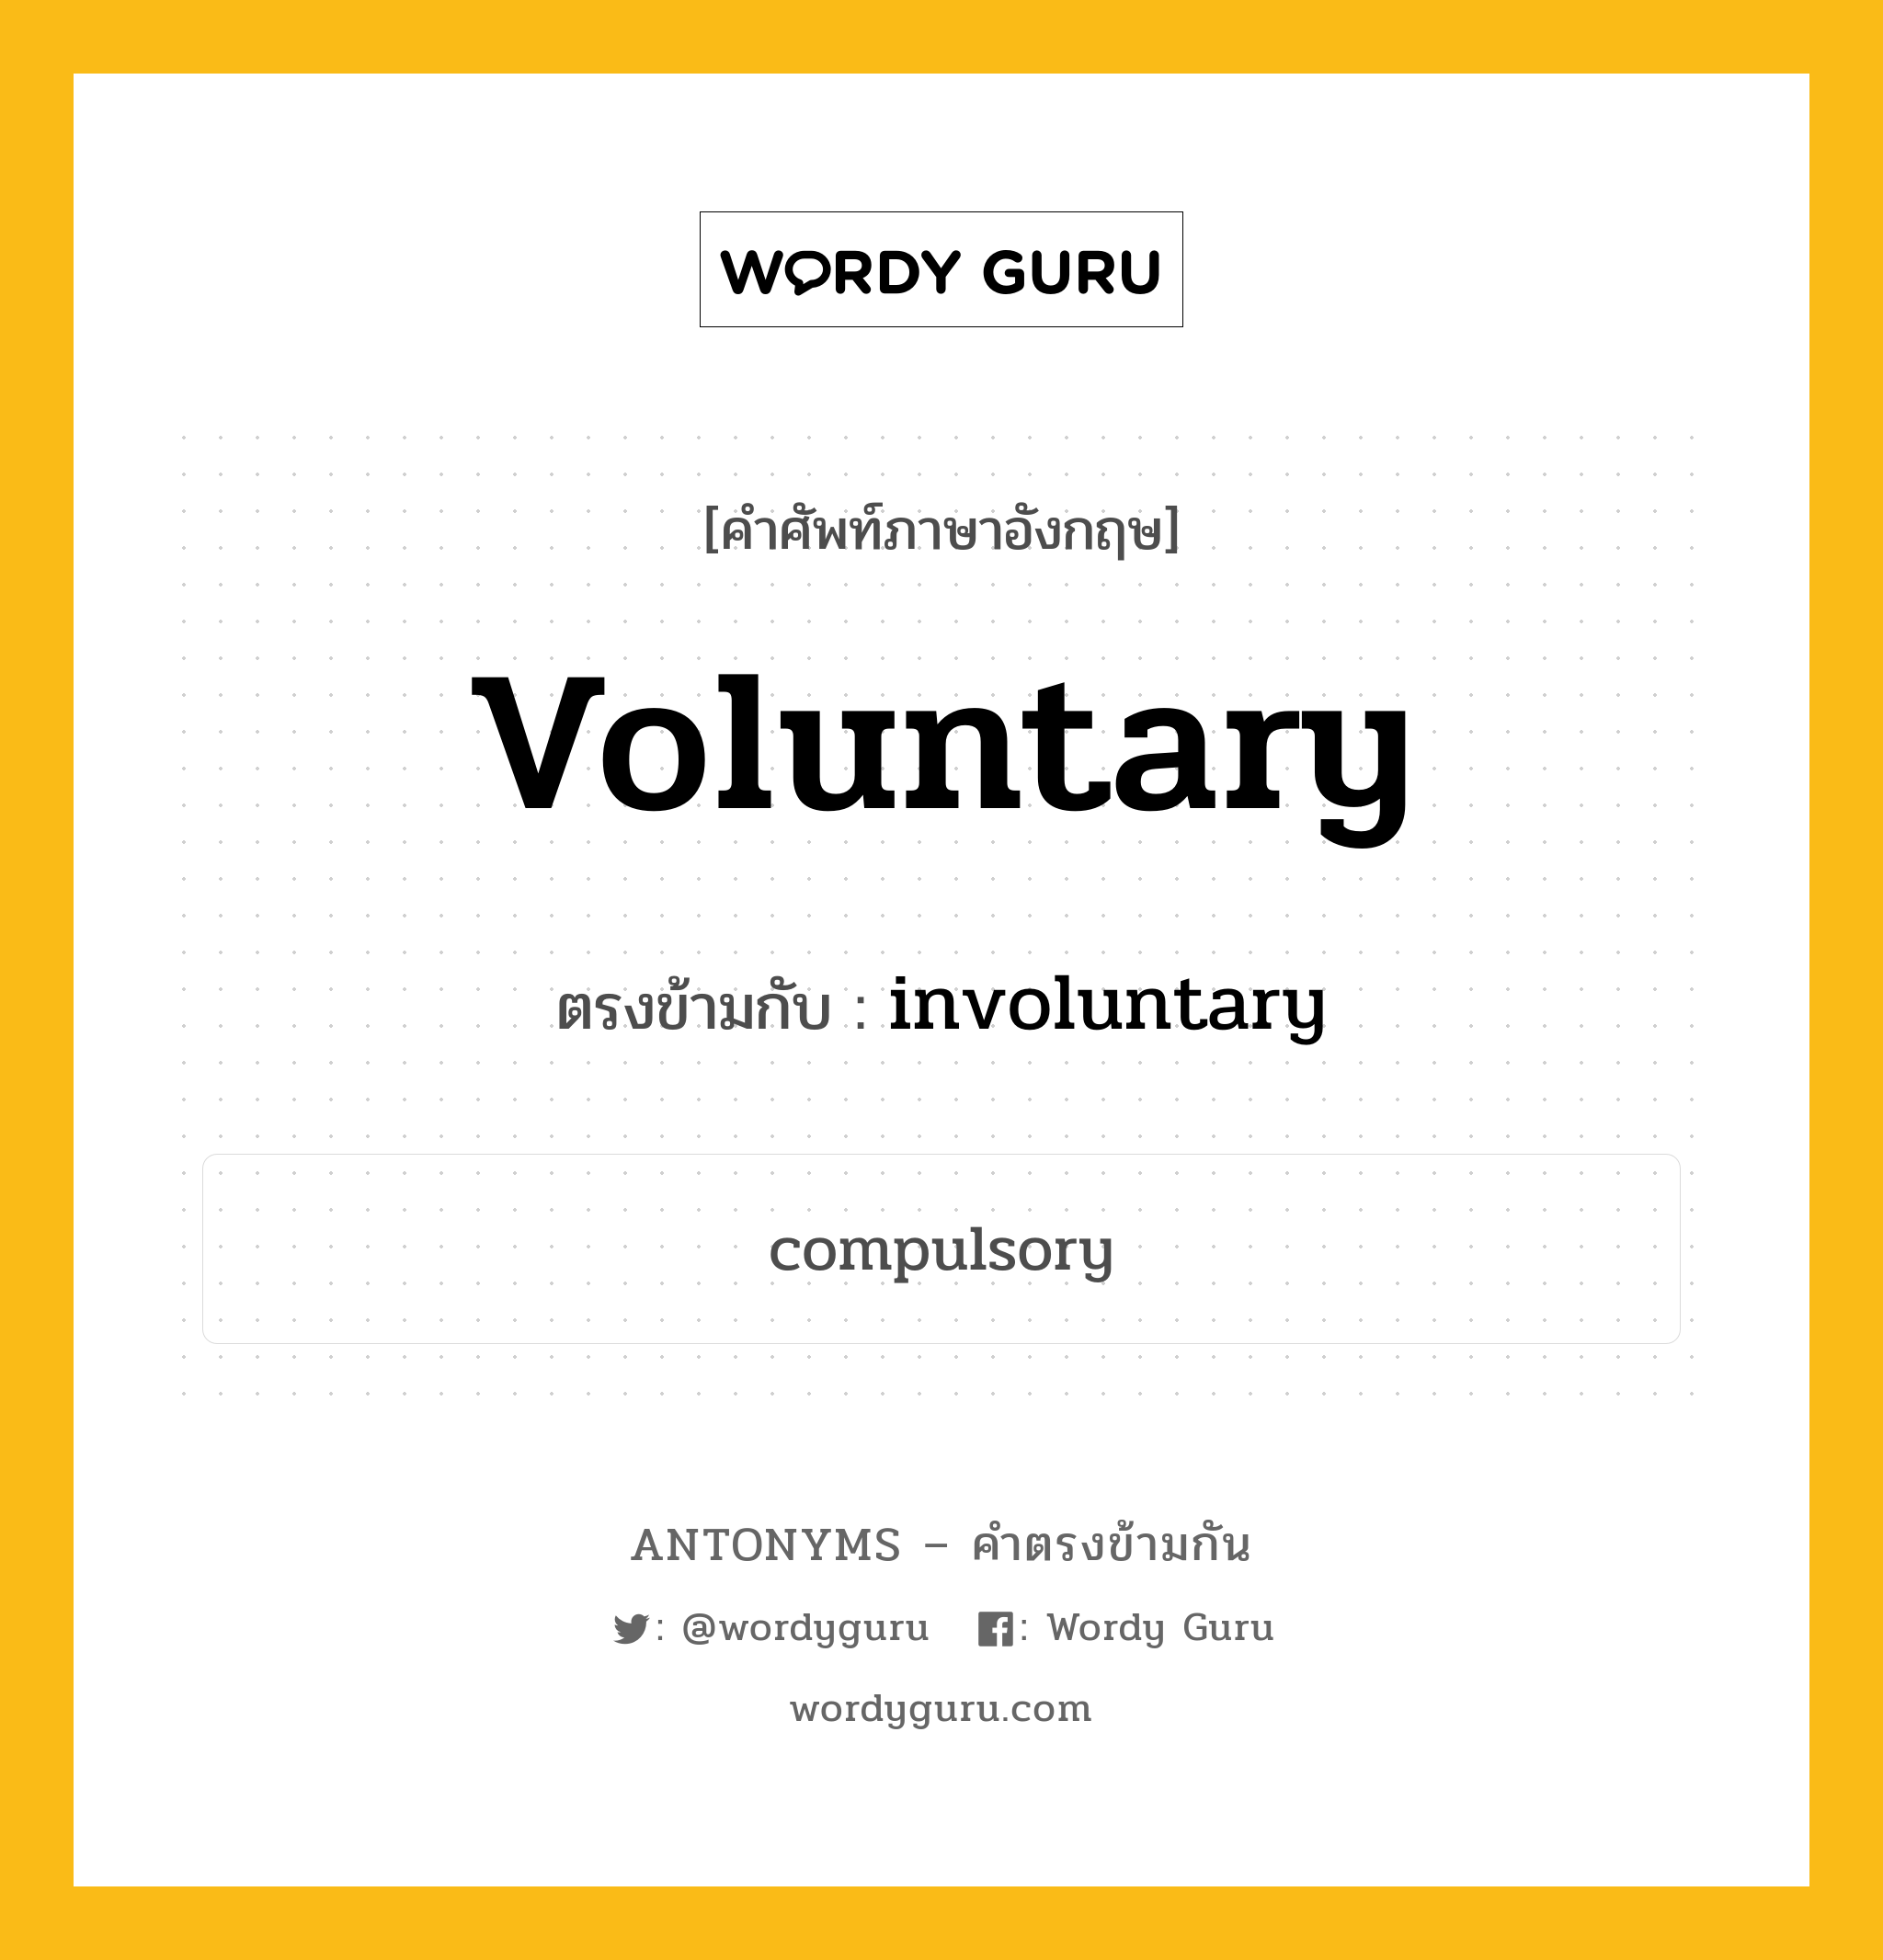 voluntary เป็นคำตรงข้ามกับคำไหนบ้าง?, คำศัพท์ภาษาอังกฤษ voluntary ตรงข้ามกับ involuntary หมวด involuntary